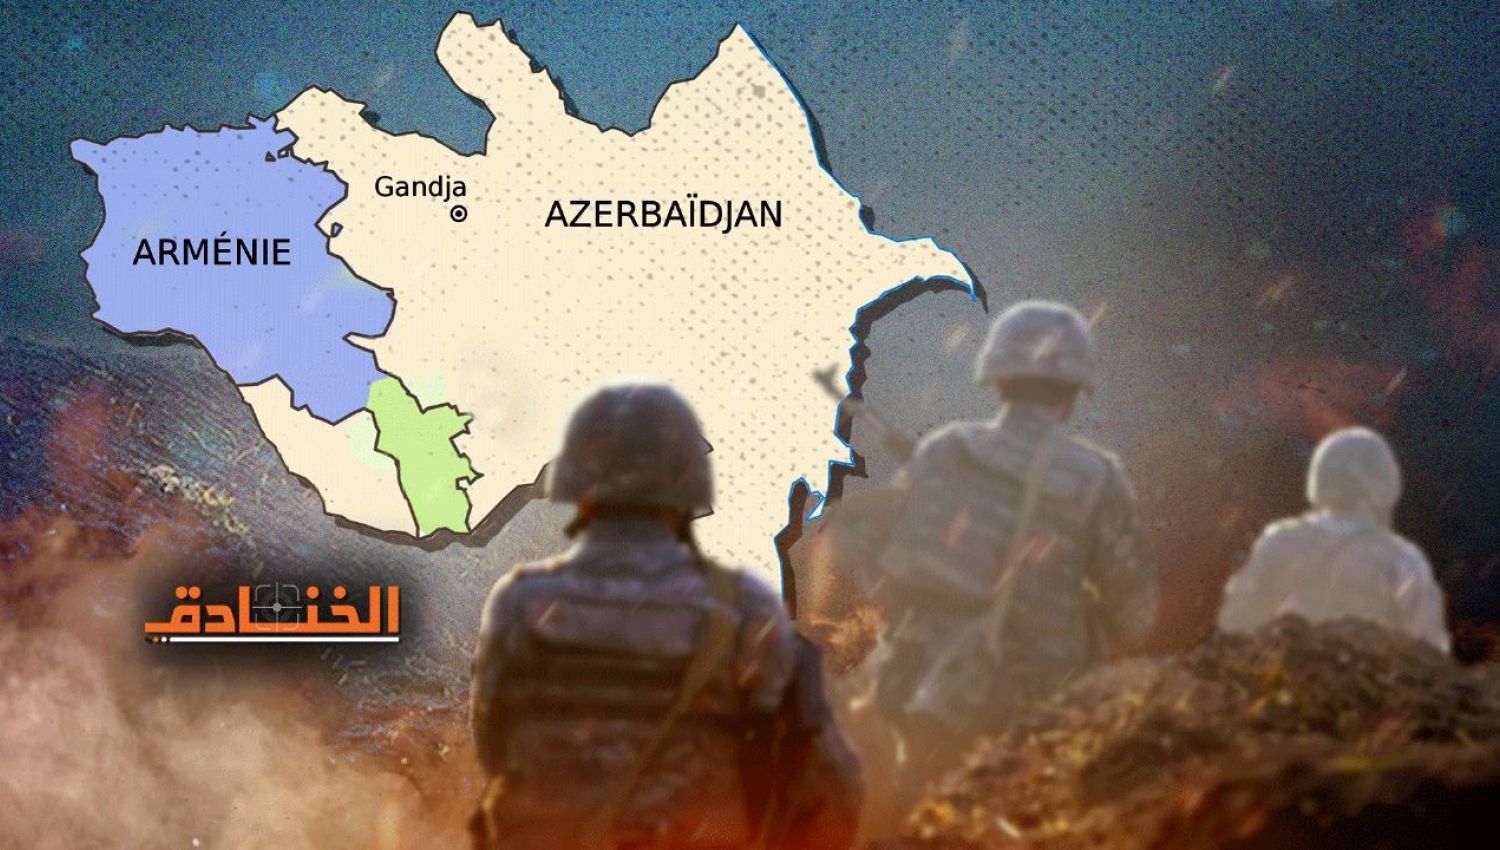 الزحف الأذربيجاني في أرمينيا والقوات المسلحة الإيرانية تستعد